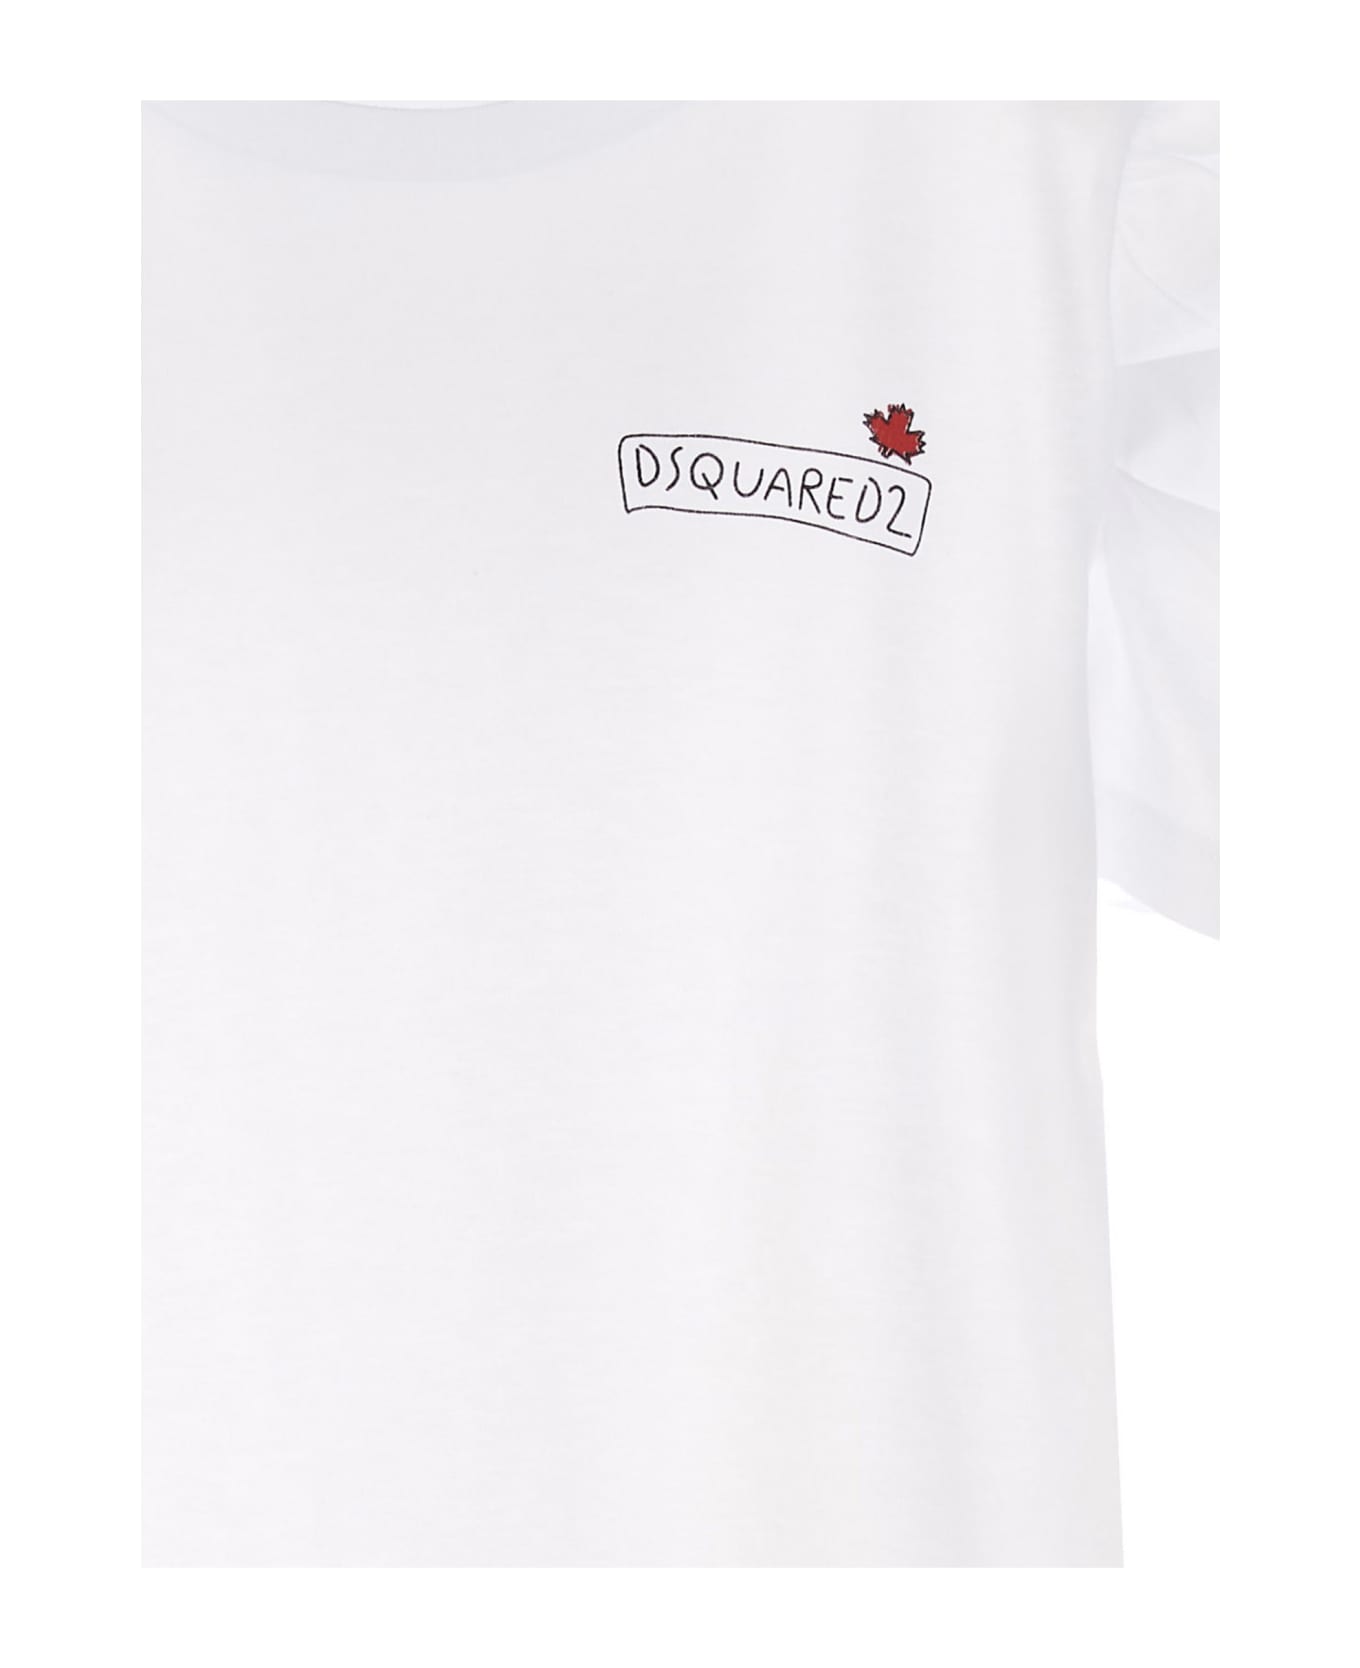 Dsquared2 Logo Print T-shirt - White